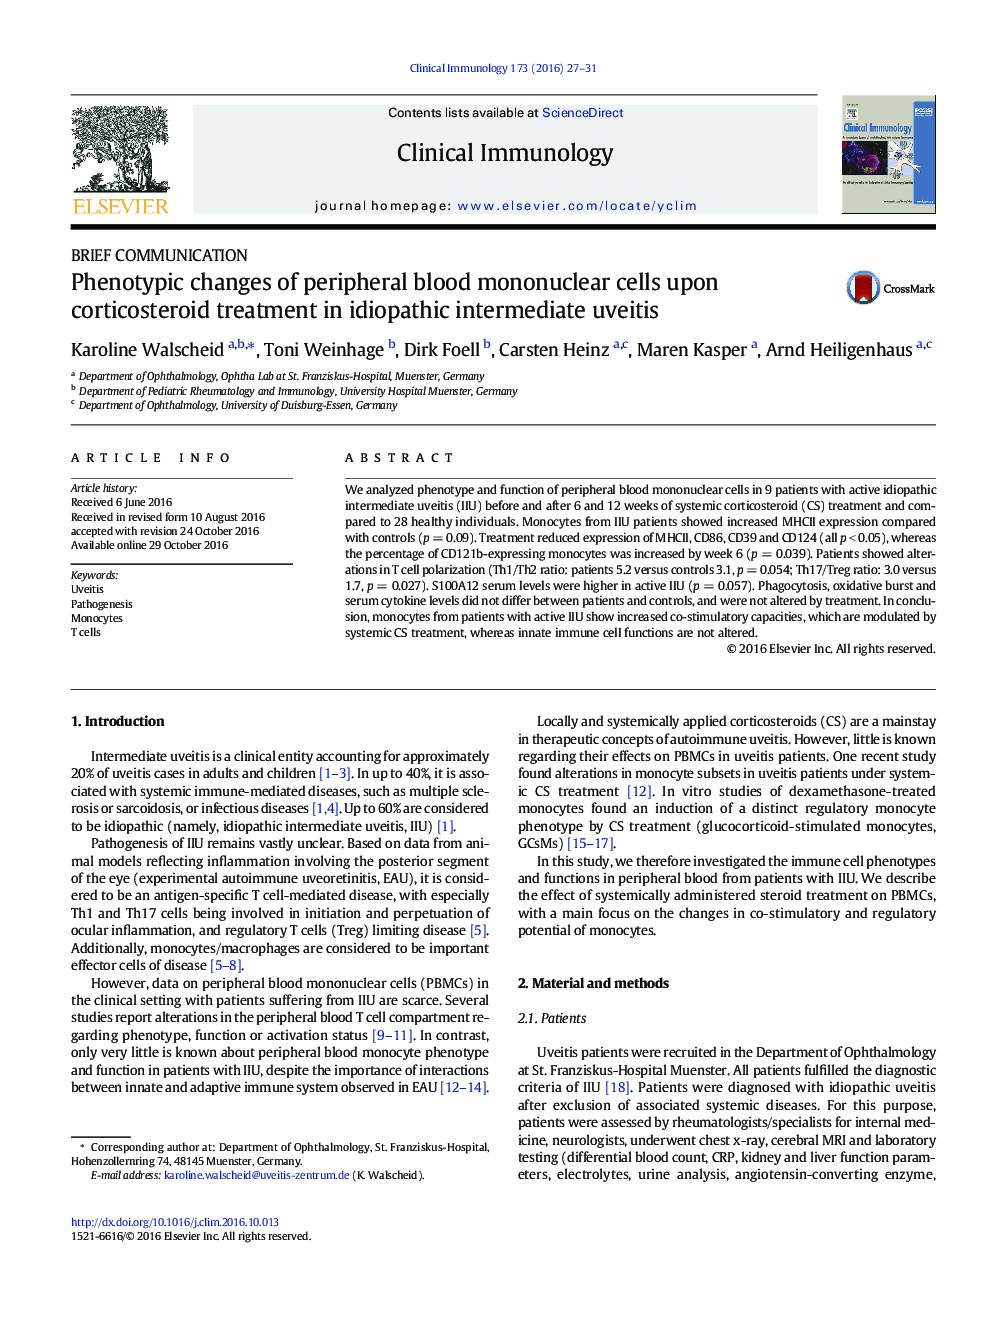 تغییرات فنوتیپی سلول های تک هسته ای محیطی بر روی درمان کورتیکواستروئید در یوویت میانی ایدیوپاتیک 